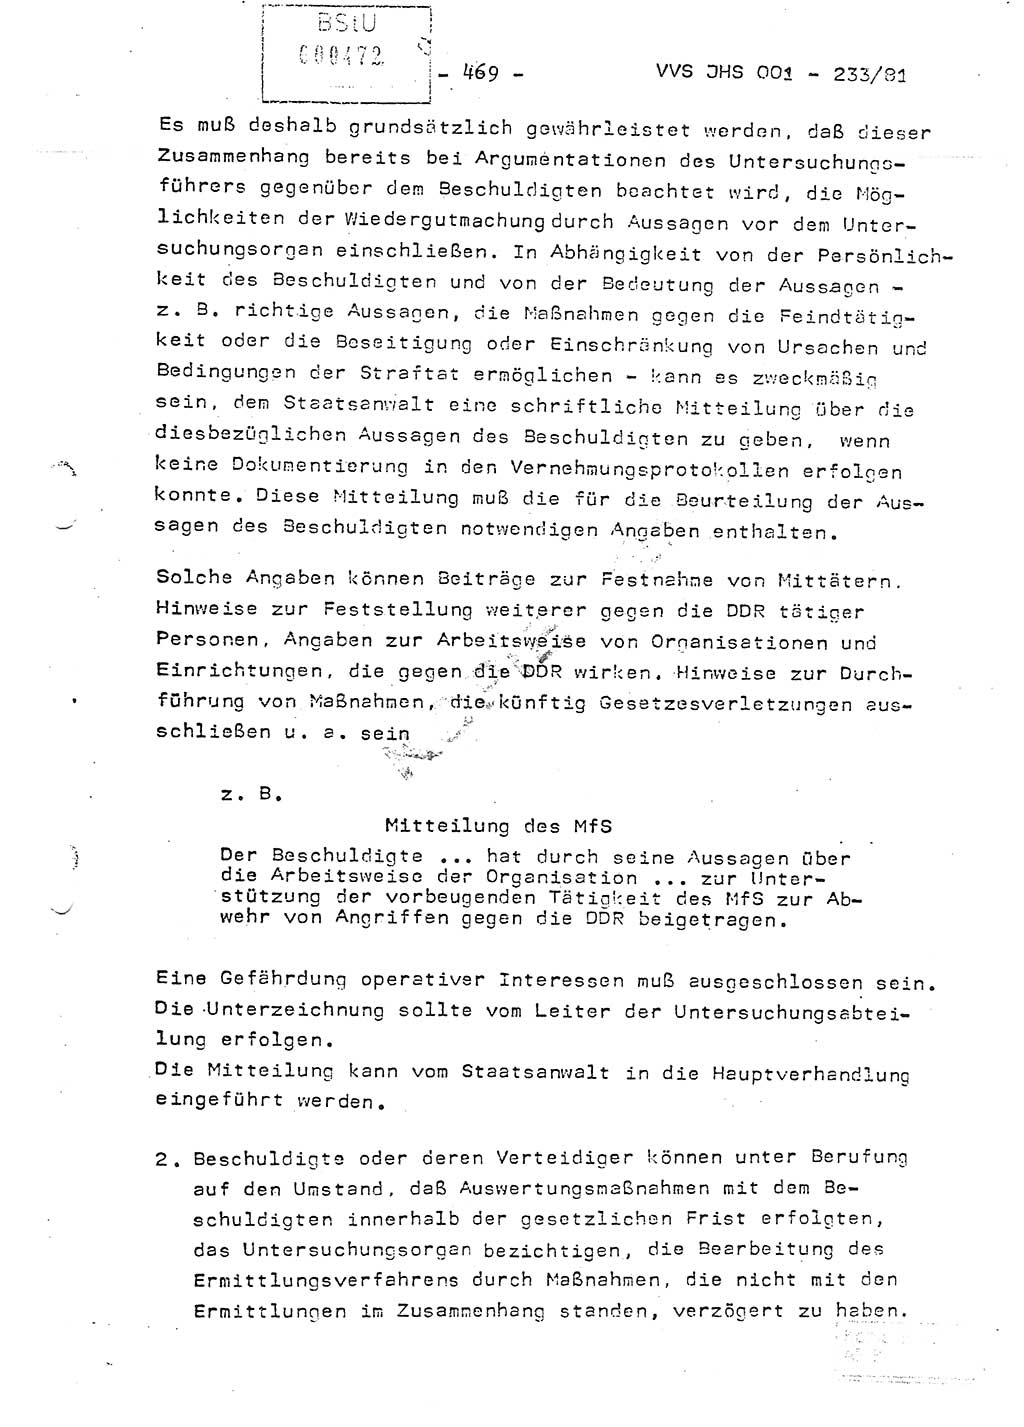 Dissertation Oberstleutnant Horst Zank (JHS), Oberstleutnant Dr. Karl-Heinz Knoblauch (JHS), Oberstleutnant Gustav-Adolf Kowalewski (HA Ⅸ), Oberstleutnant Wolfgang Plötner (HA Ⅸ), Ministerium für Staatssicherheit (MfS) [Deutsche Demokratische Republik (DDR)], Juristische Hochschule (JHS), Vertrauliche Verschlußsache (VVS) o001-233/81, Potsdam 1981, Blatt 469 (Diss. MfS DDR JHS VVS o001-233/81 1981, Bl. 469)